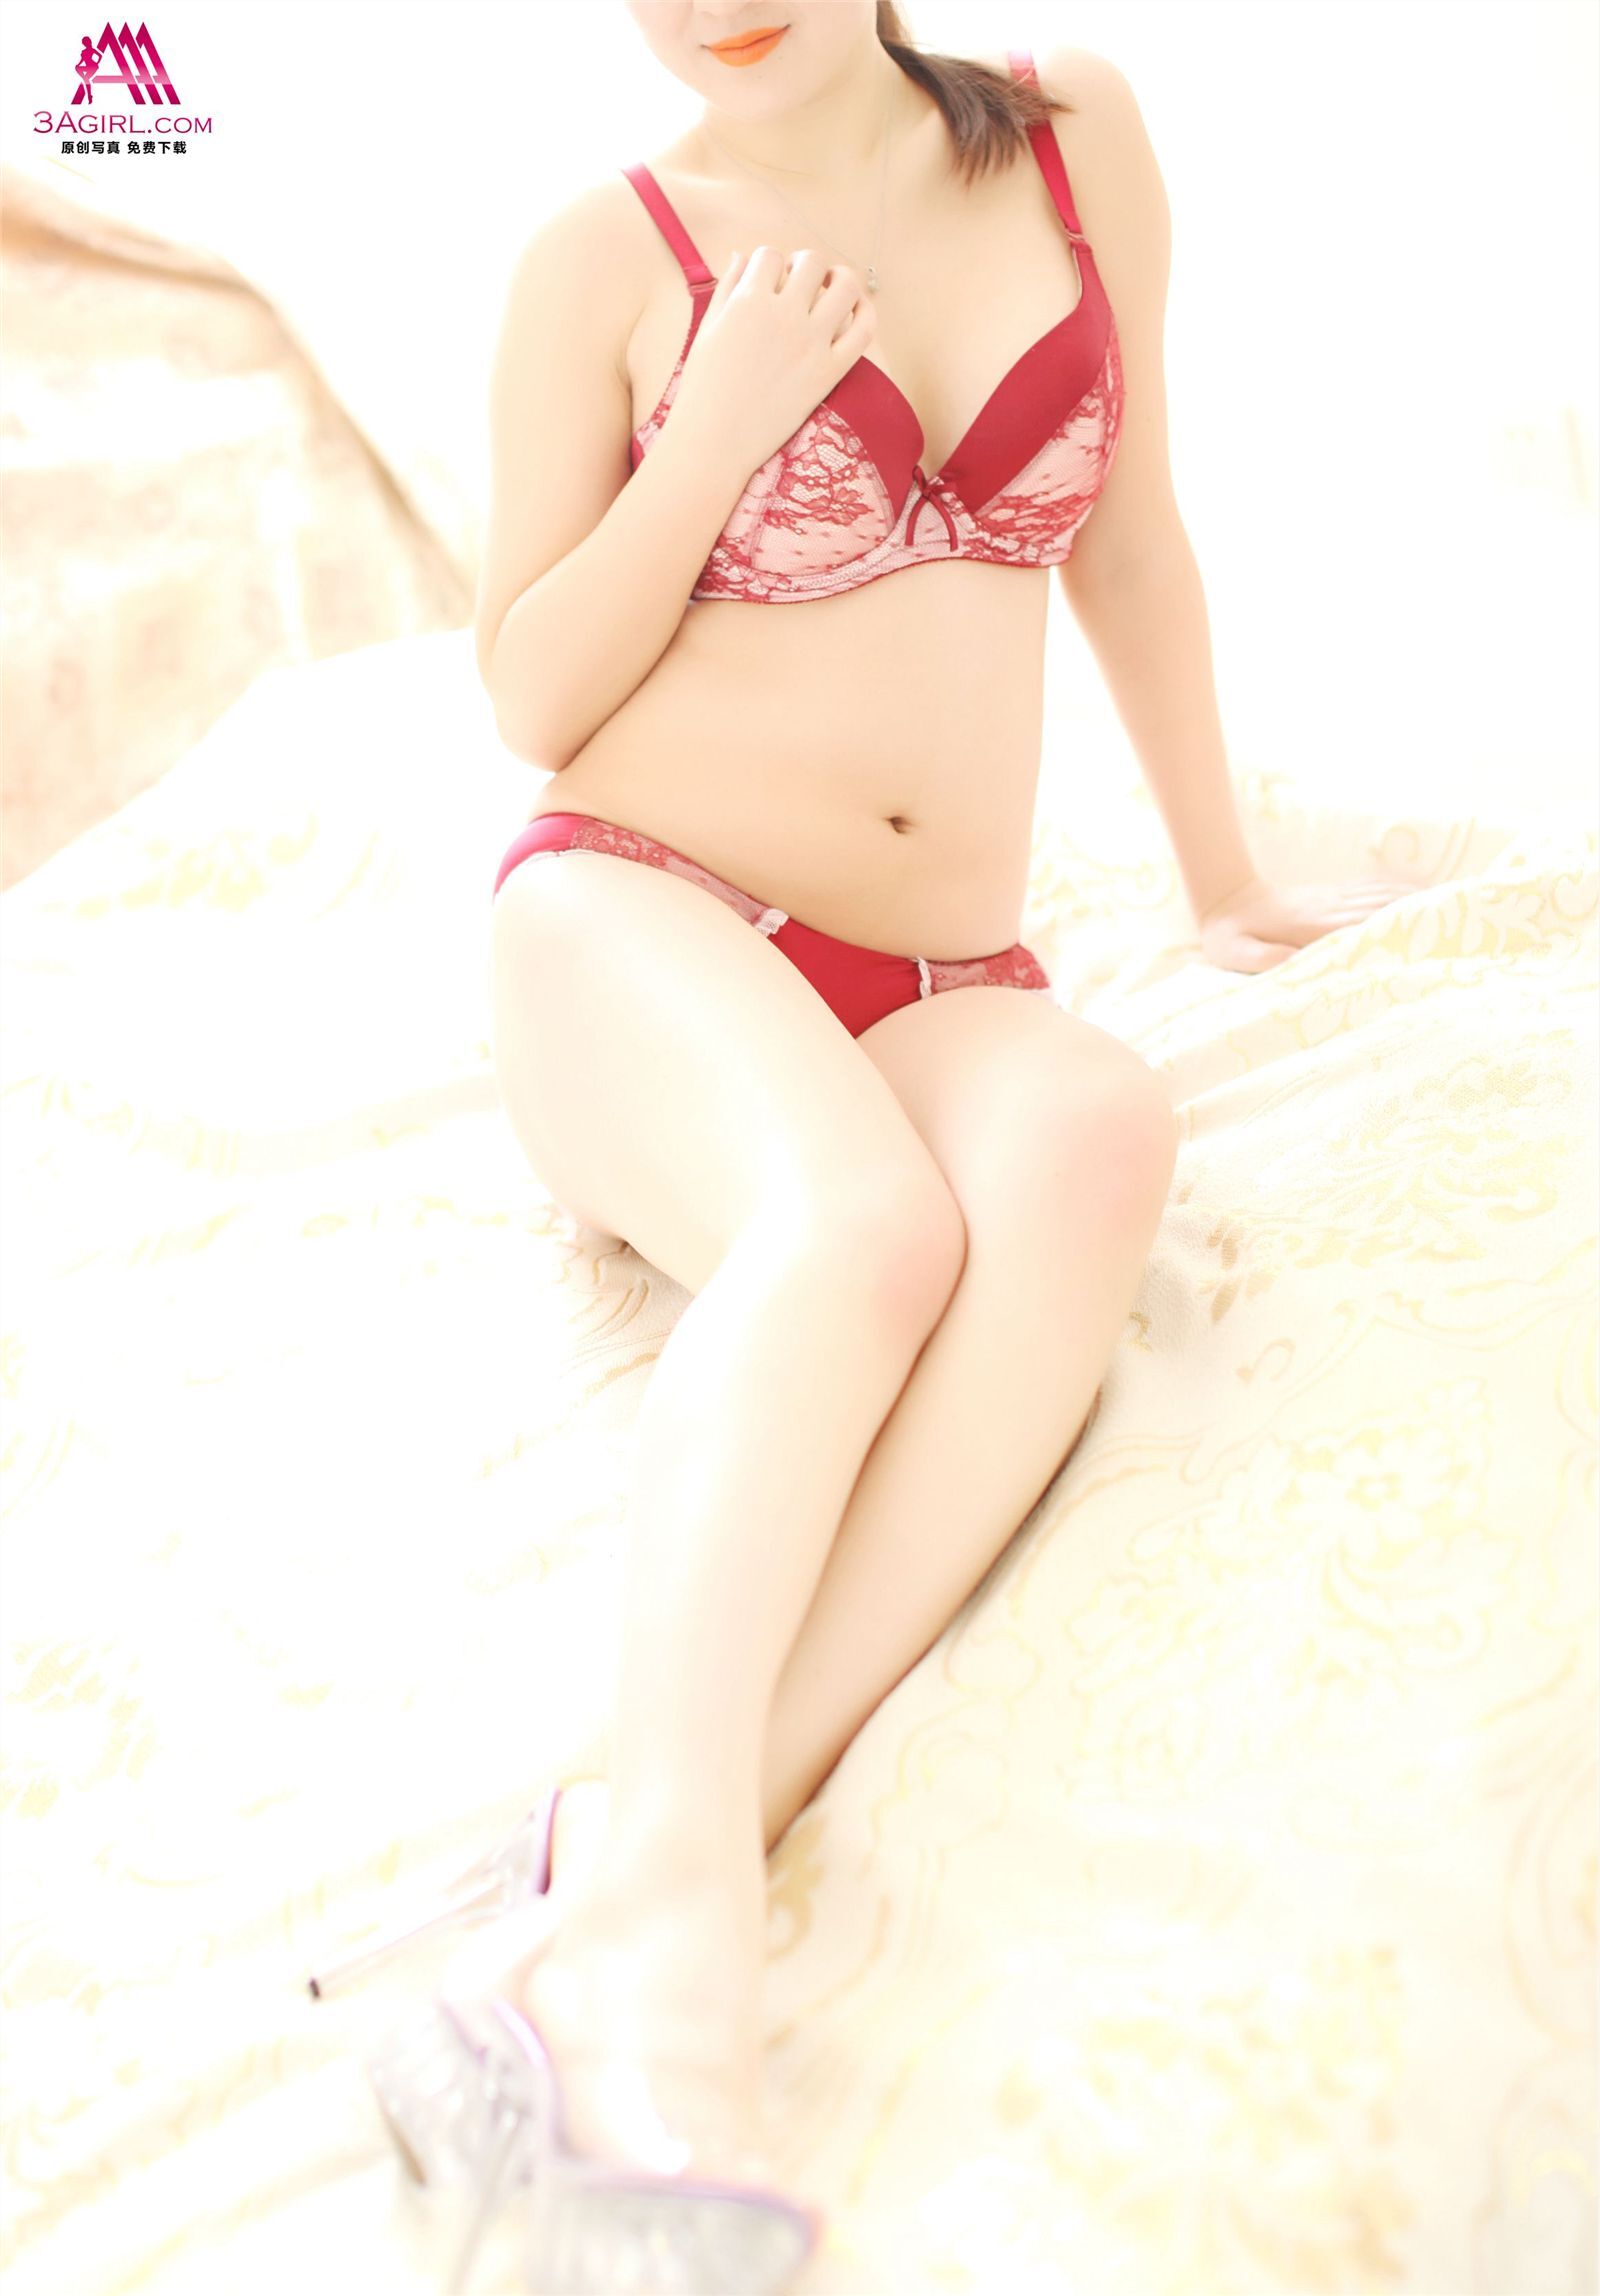 [3agirl] 2014.06.10 AAA girl no.259 red Elegance: Xiaoyan (2)